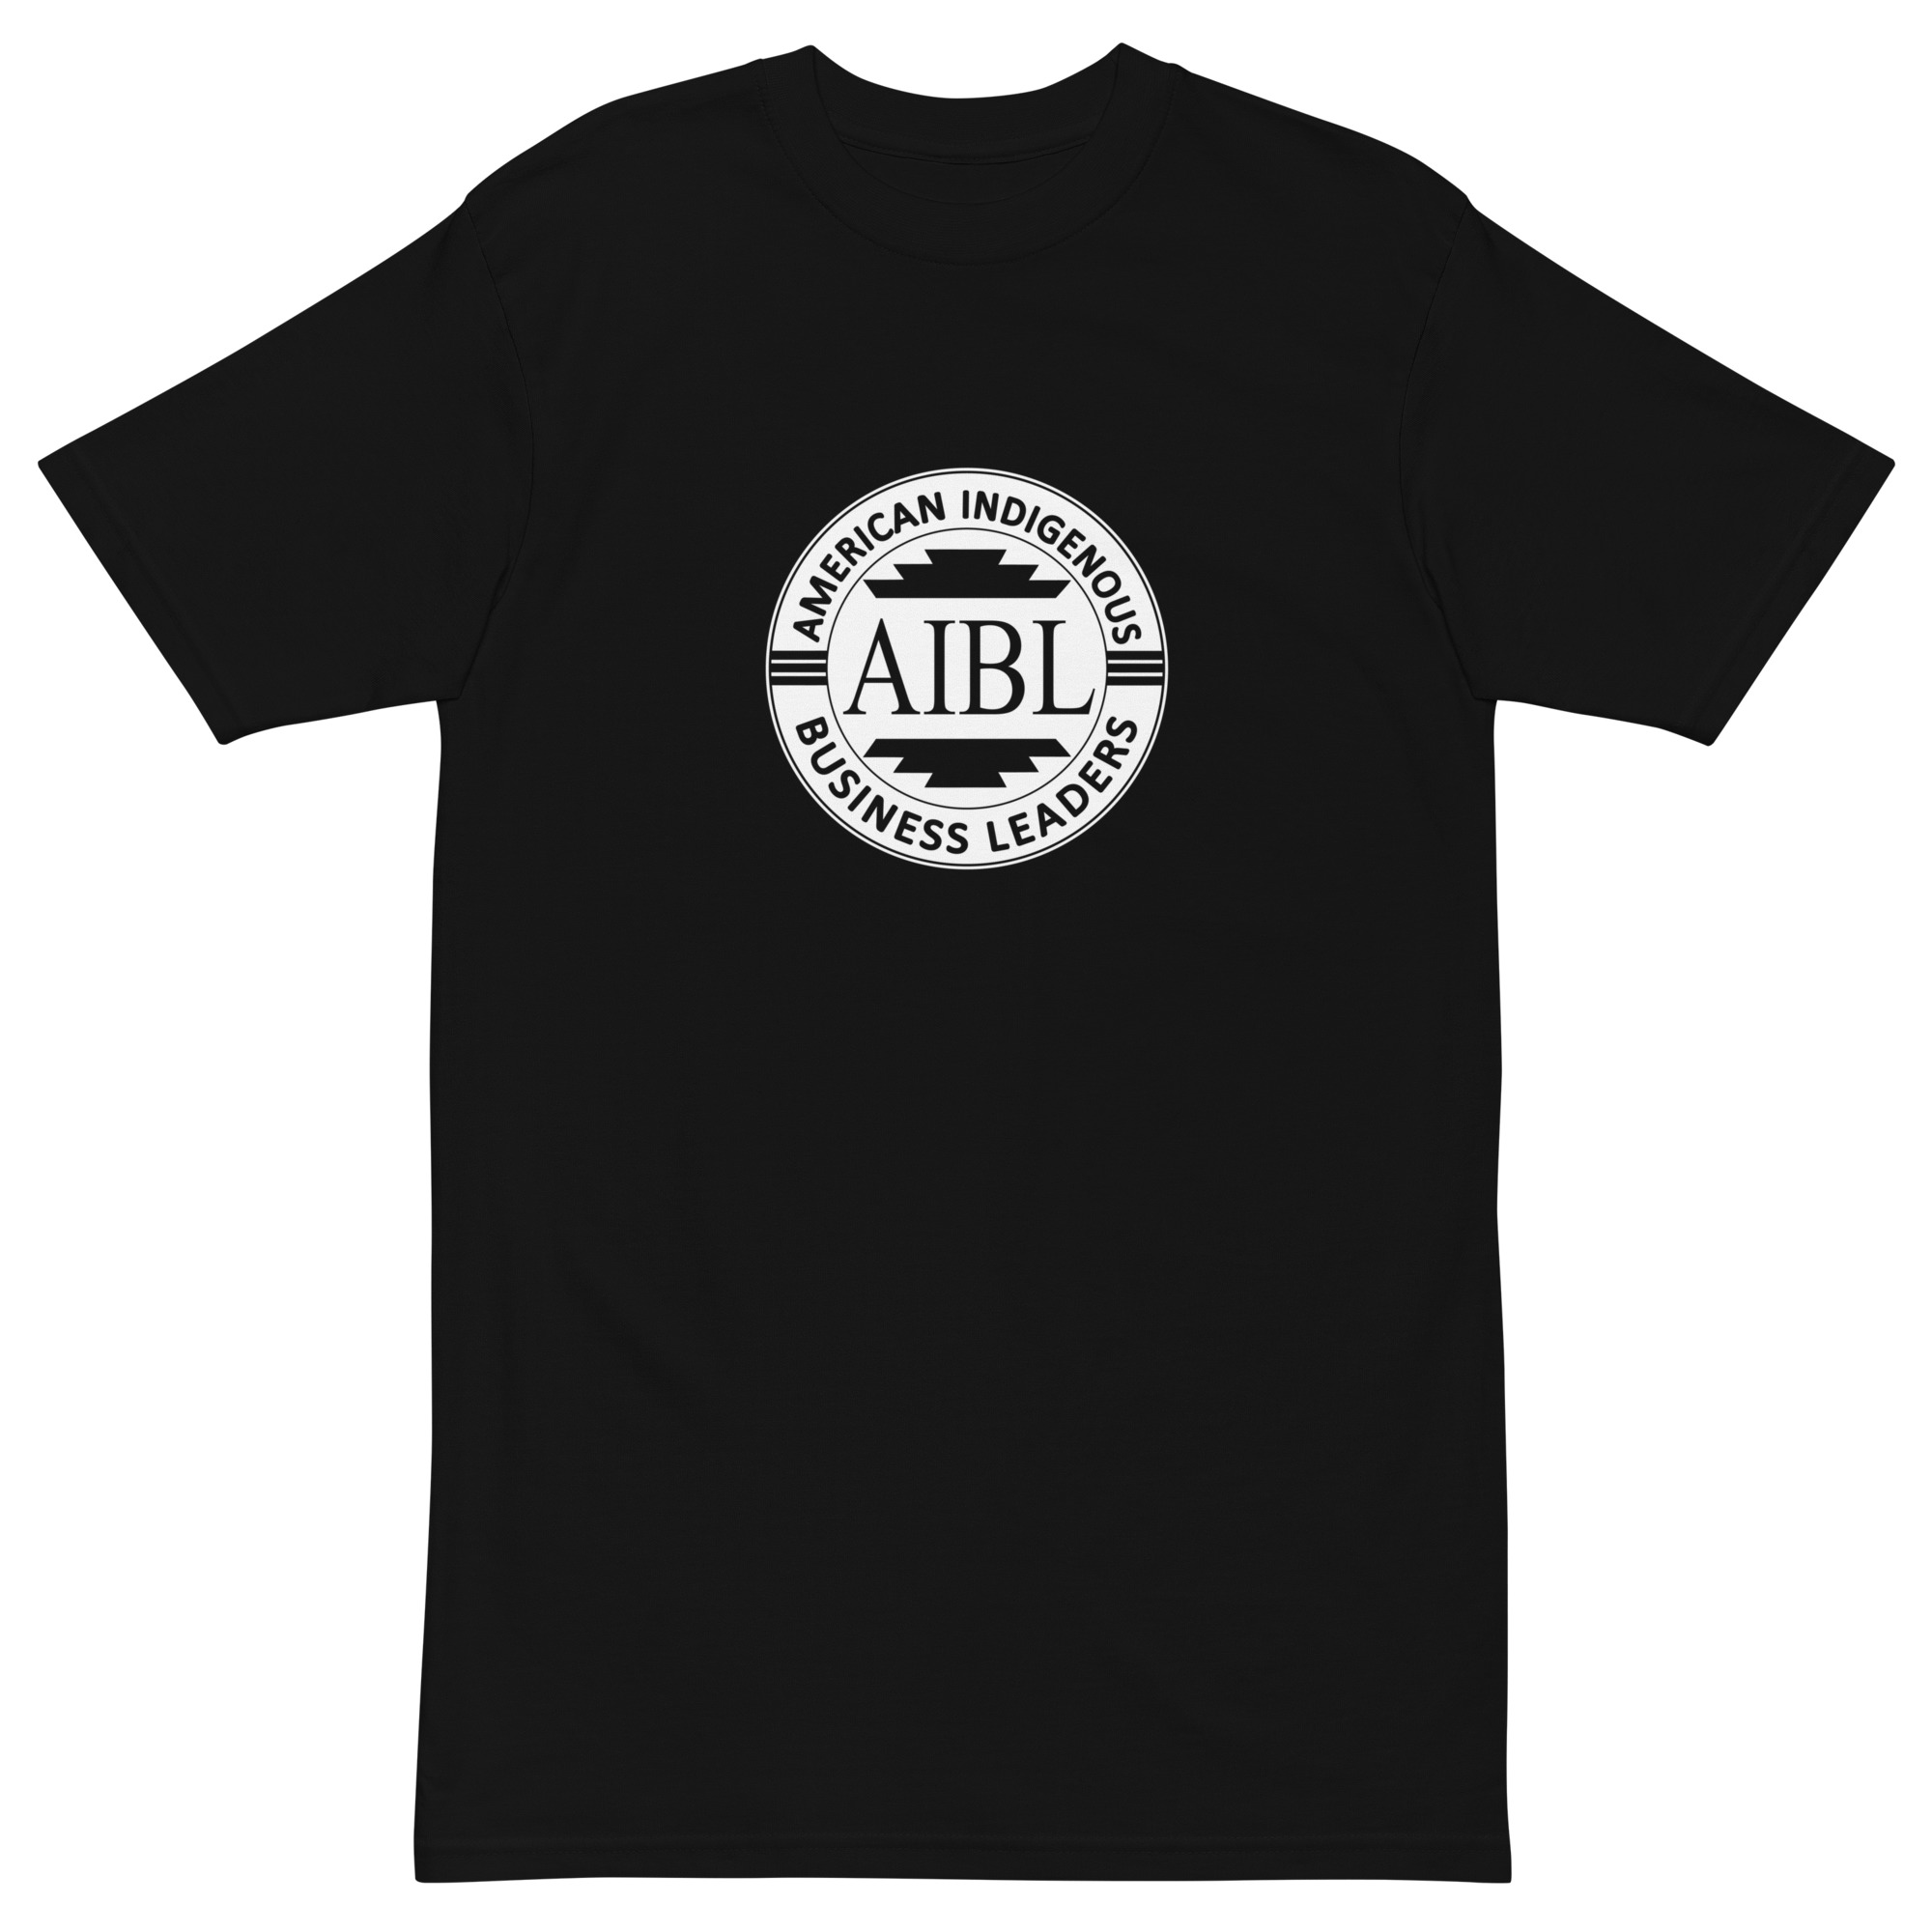 AIBL Branded Tee - mens - American Indigenous Business Leaders